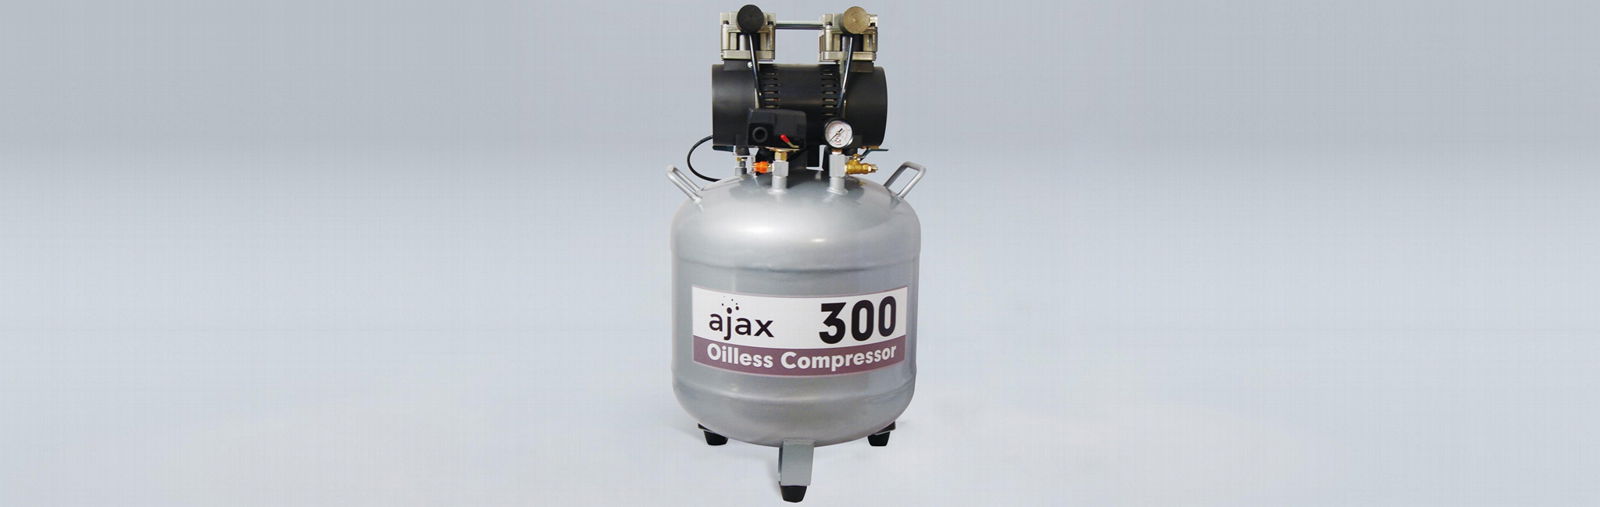 AJAX 300 Air Compressor